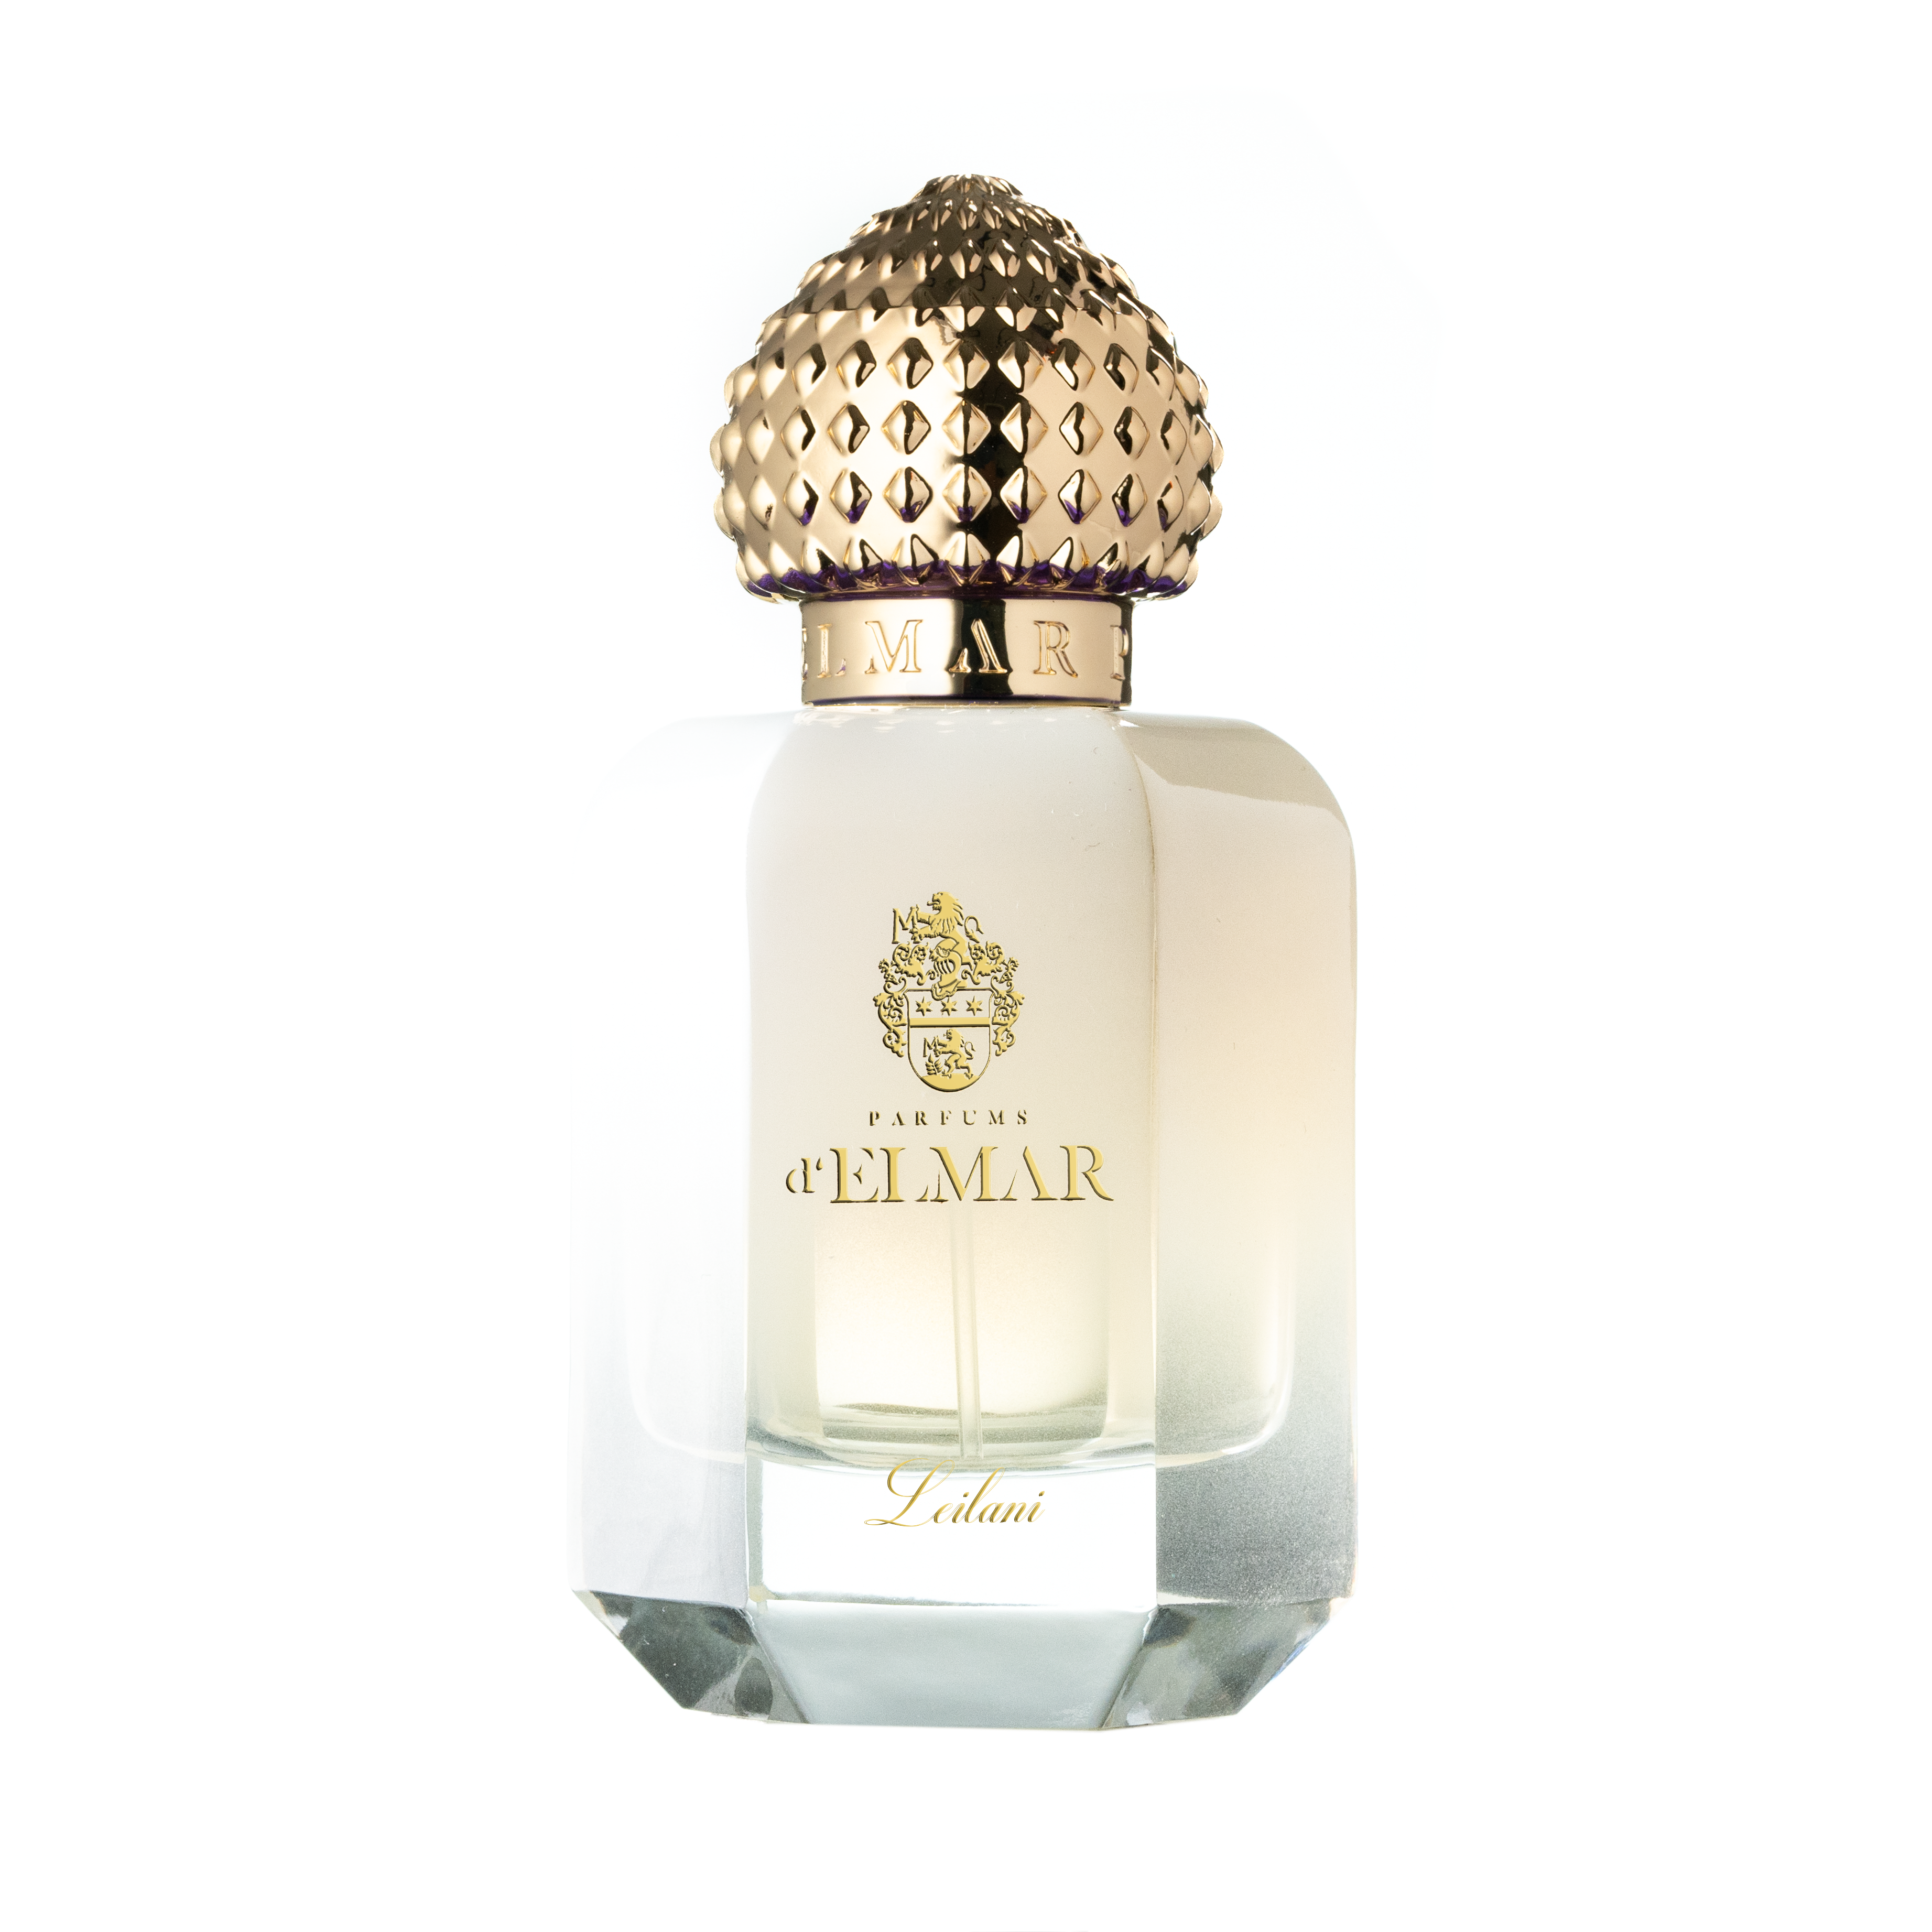 Parfums d'Elmar - Leilani - Extrait de Parfum